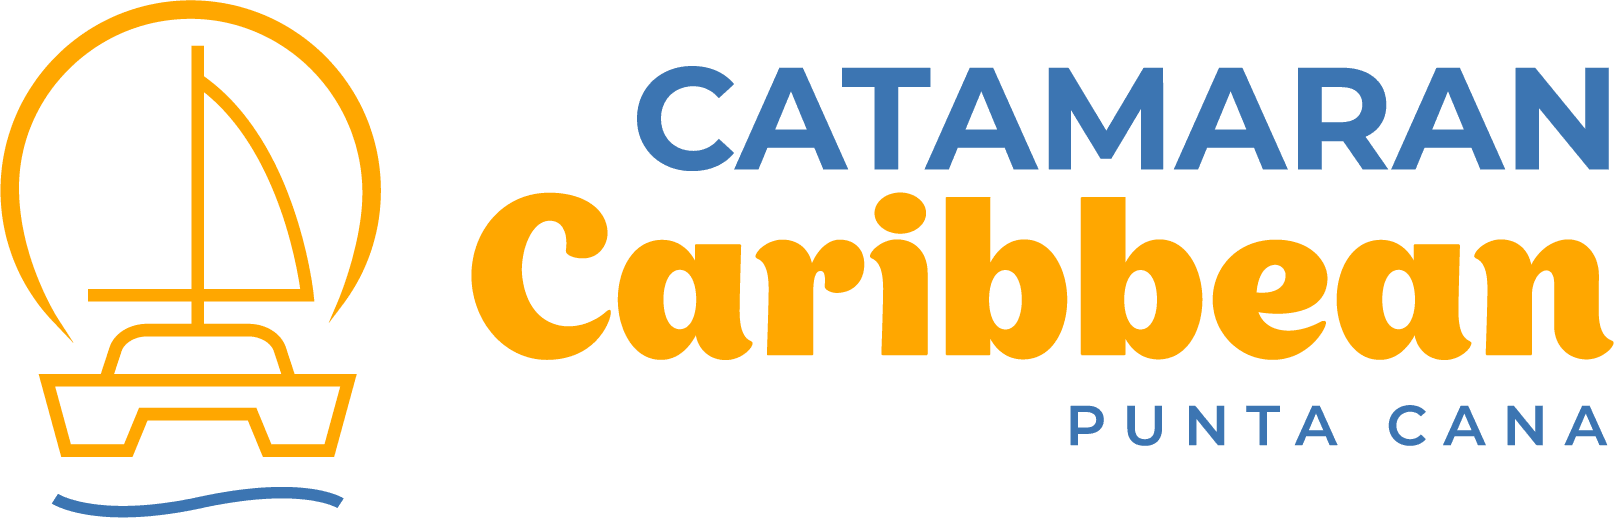 Catamaran Caribbean